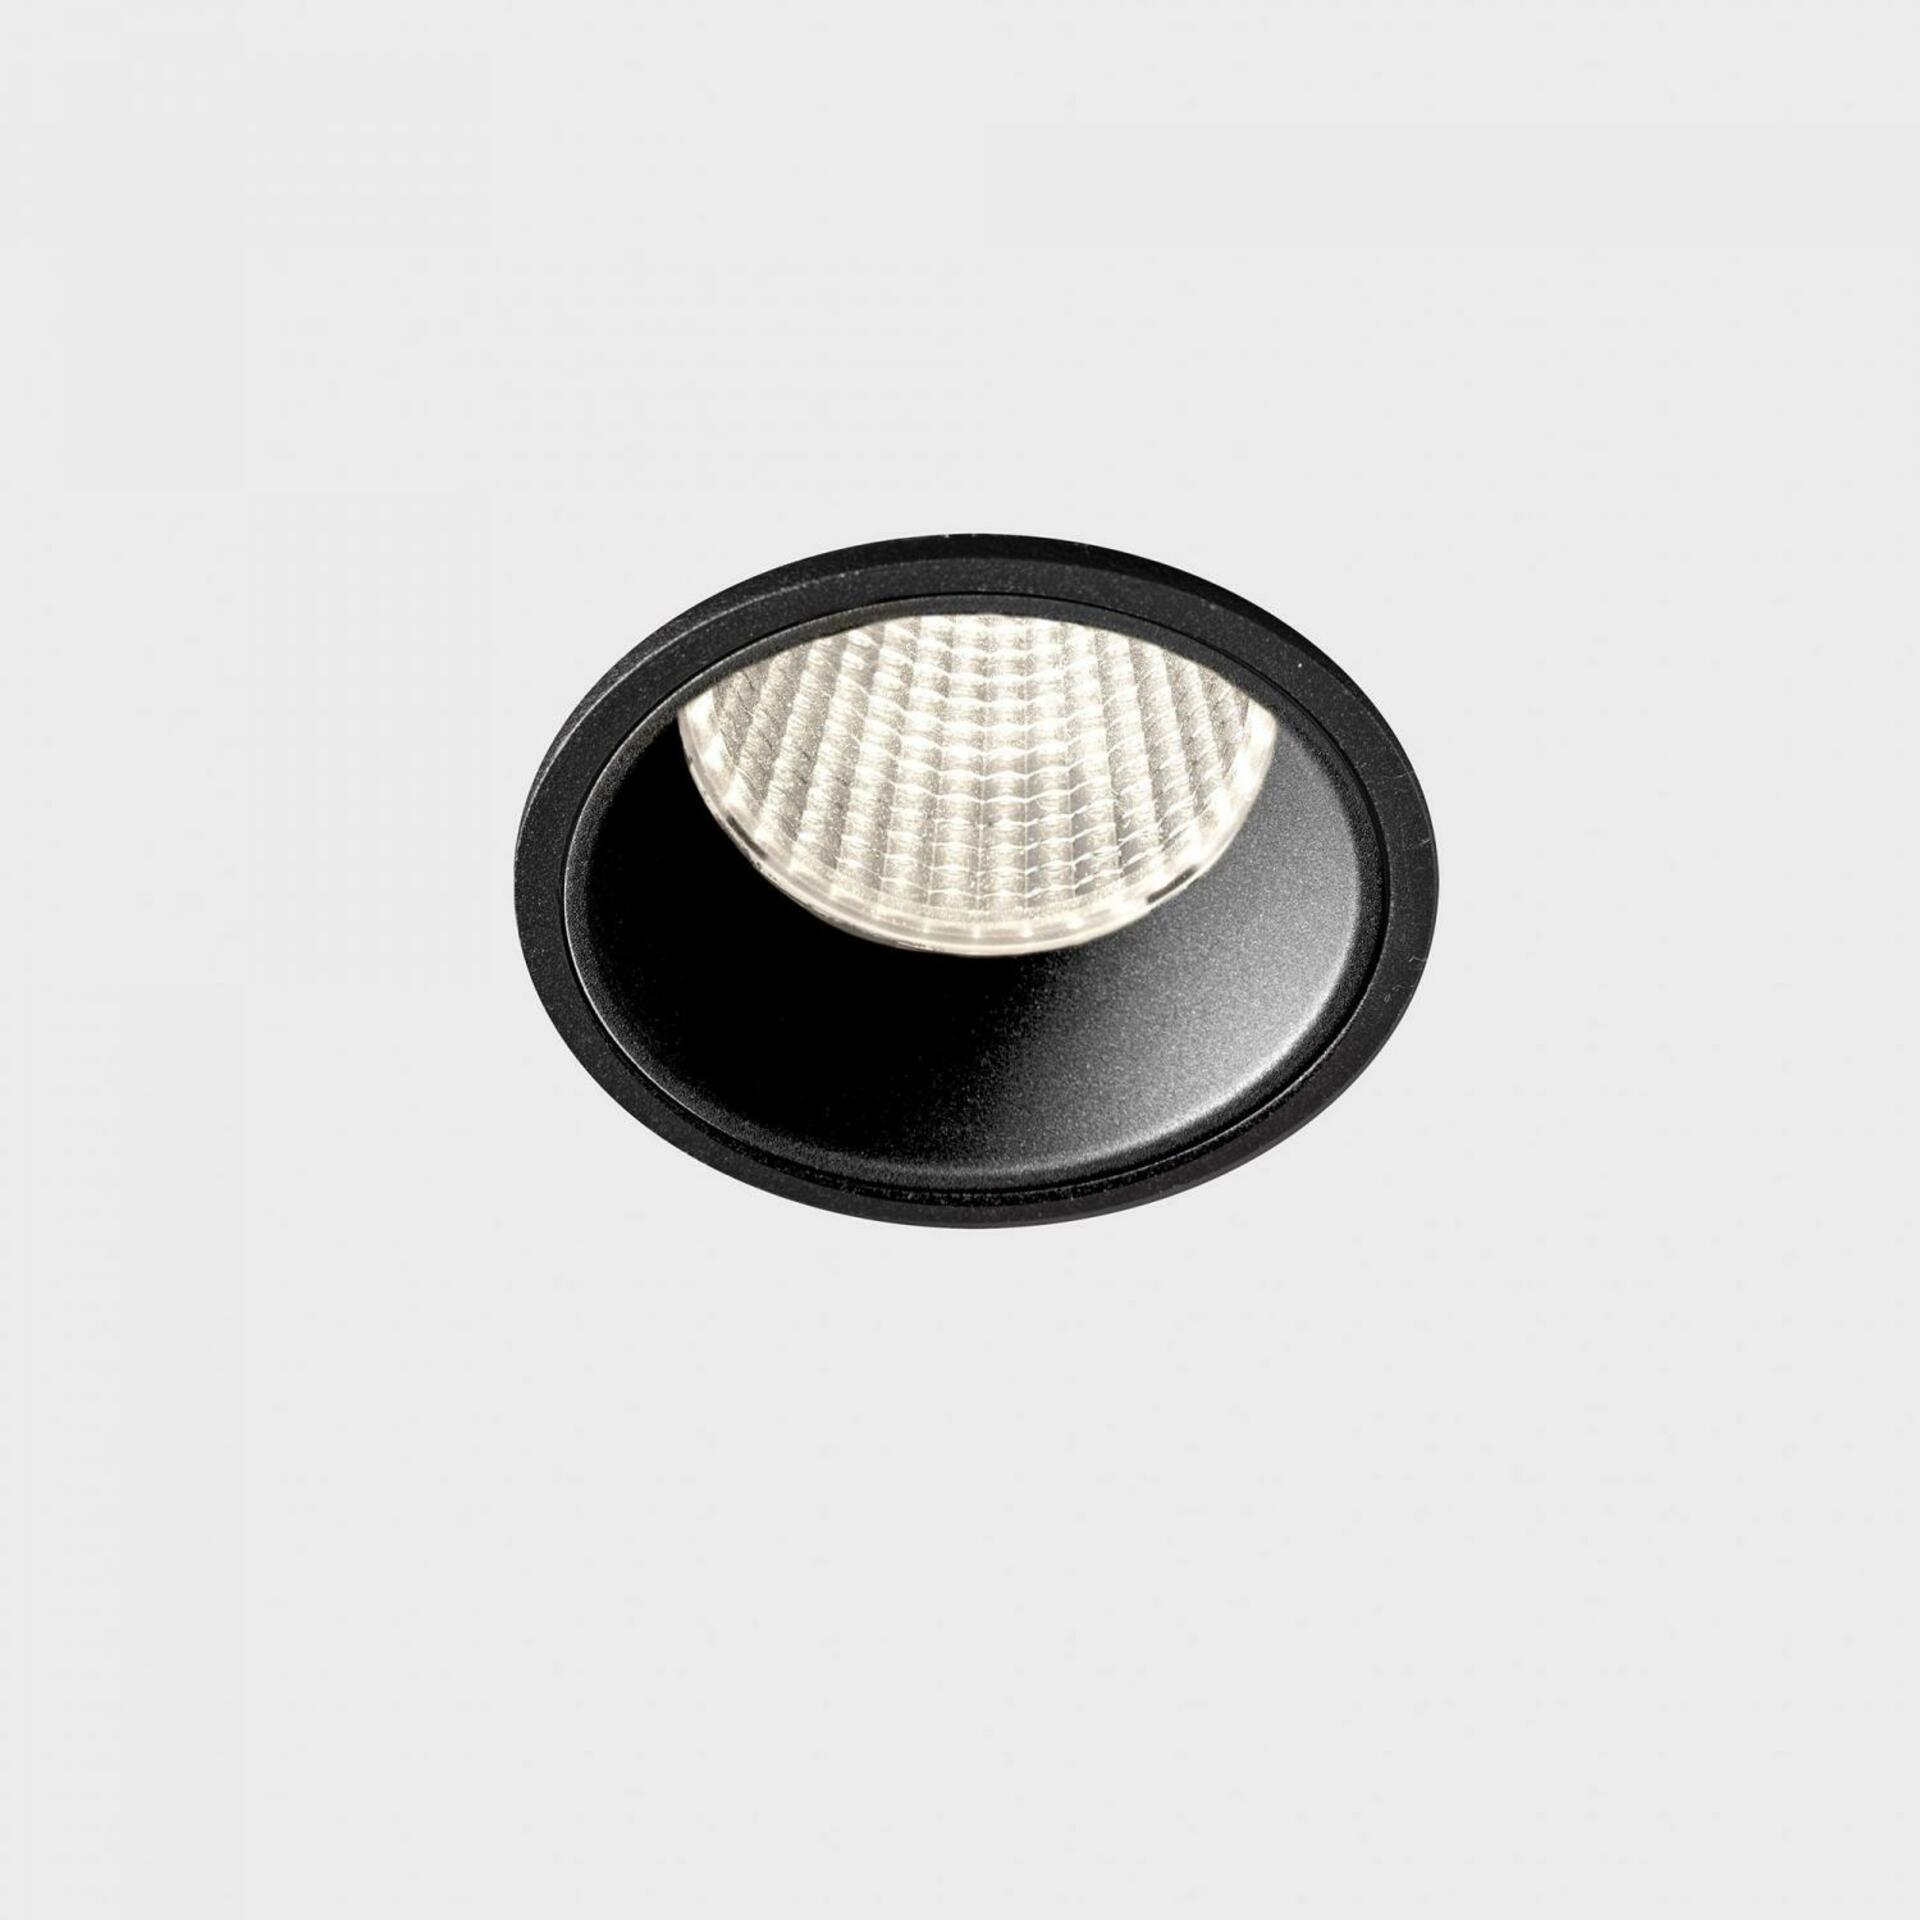 KOHL LIGHTING KOHL-Lighting VERSUS zapuštěné svítidlo s rámečkem pr. 60 mm černá 38° 5 W CRI 80 3000K 1.10V